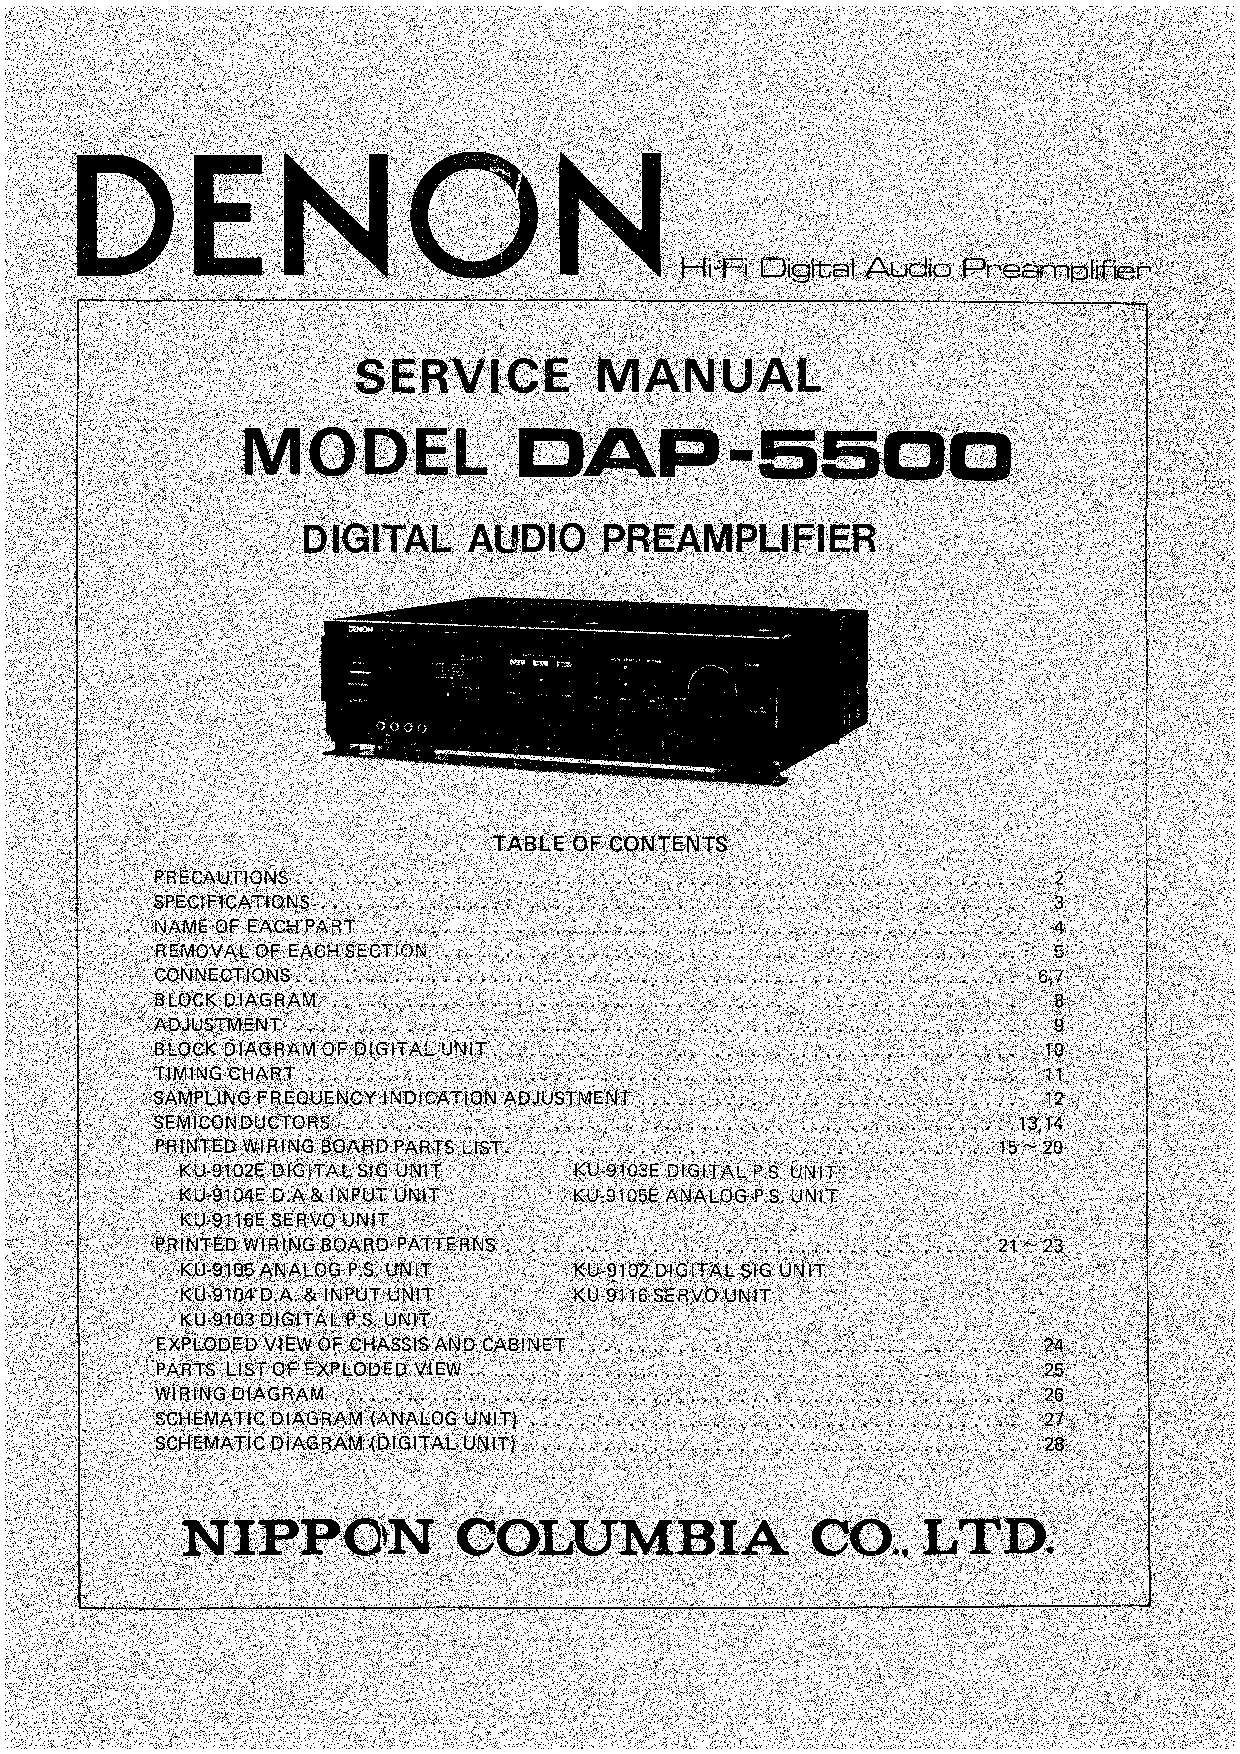 Denon DAP-5500 Service Manual